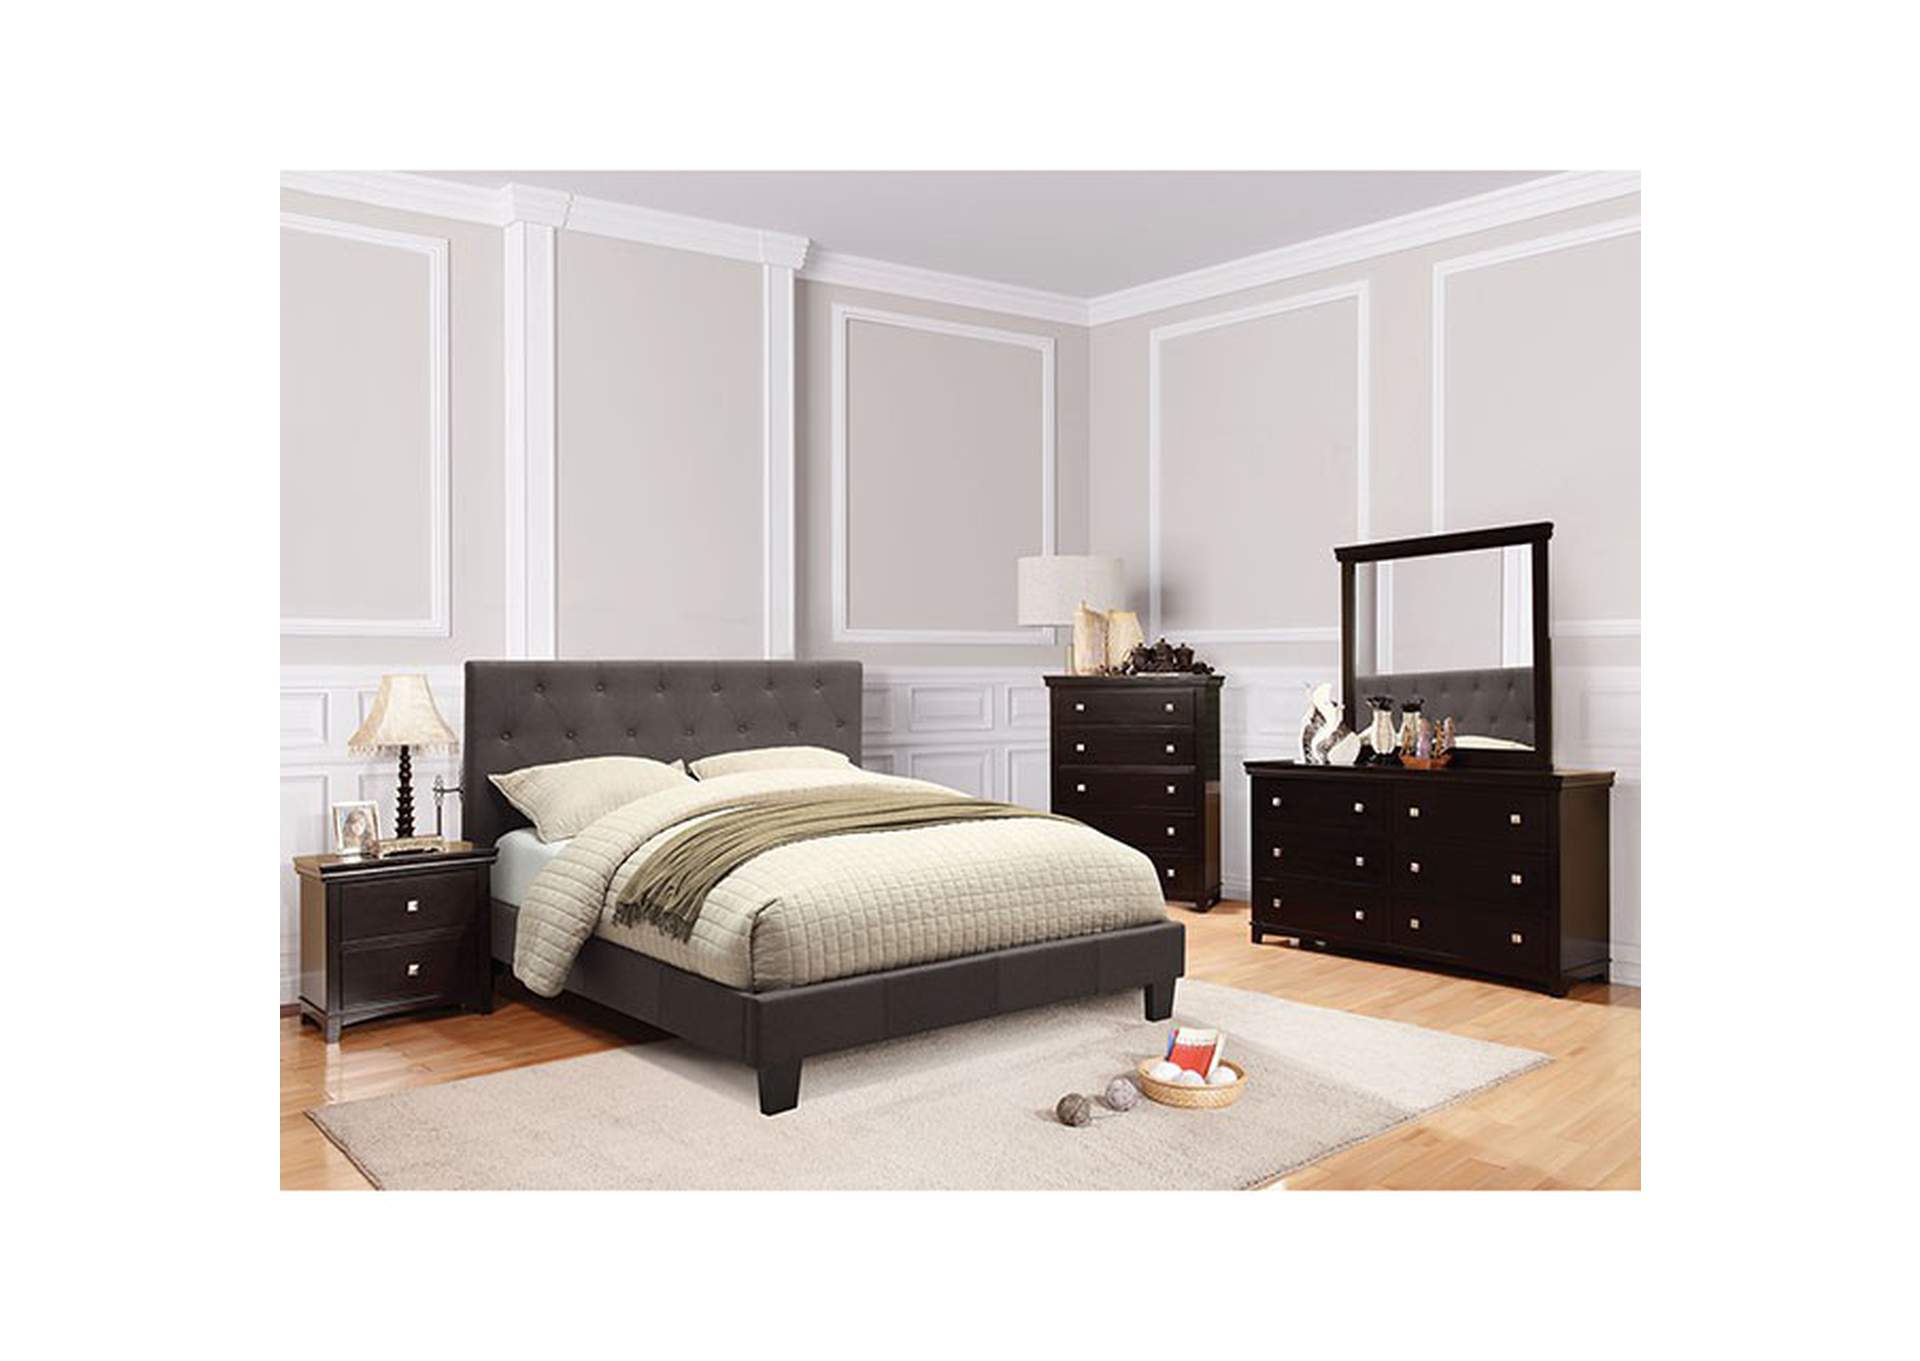 Leeroy Queen Bed,Furniture of America